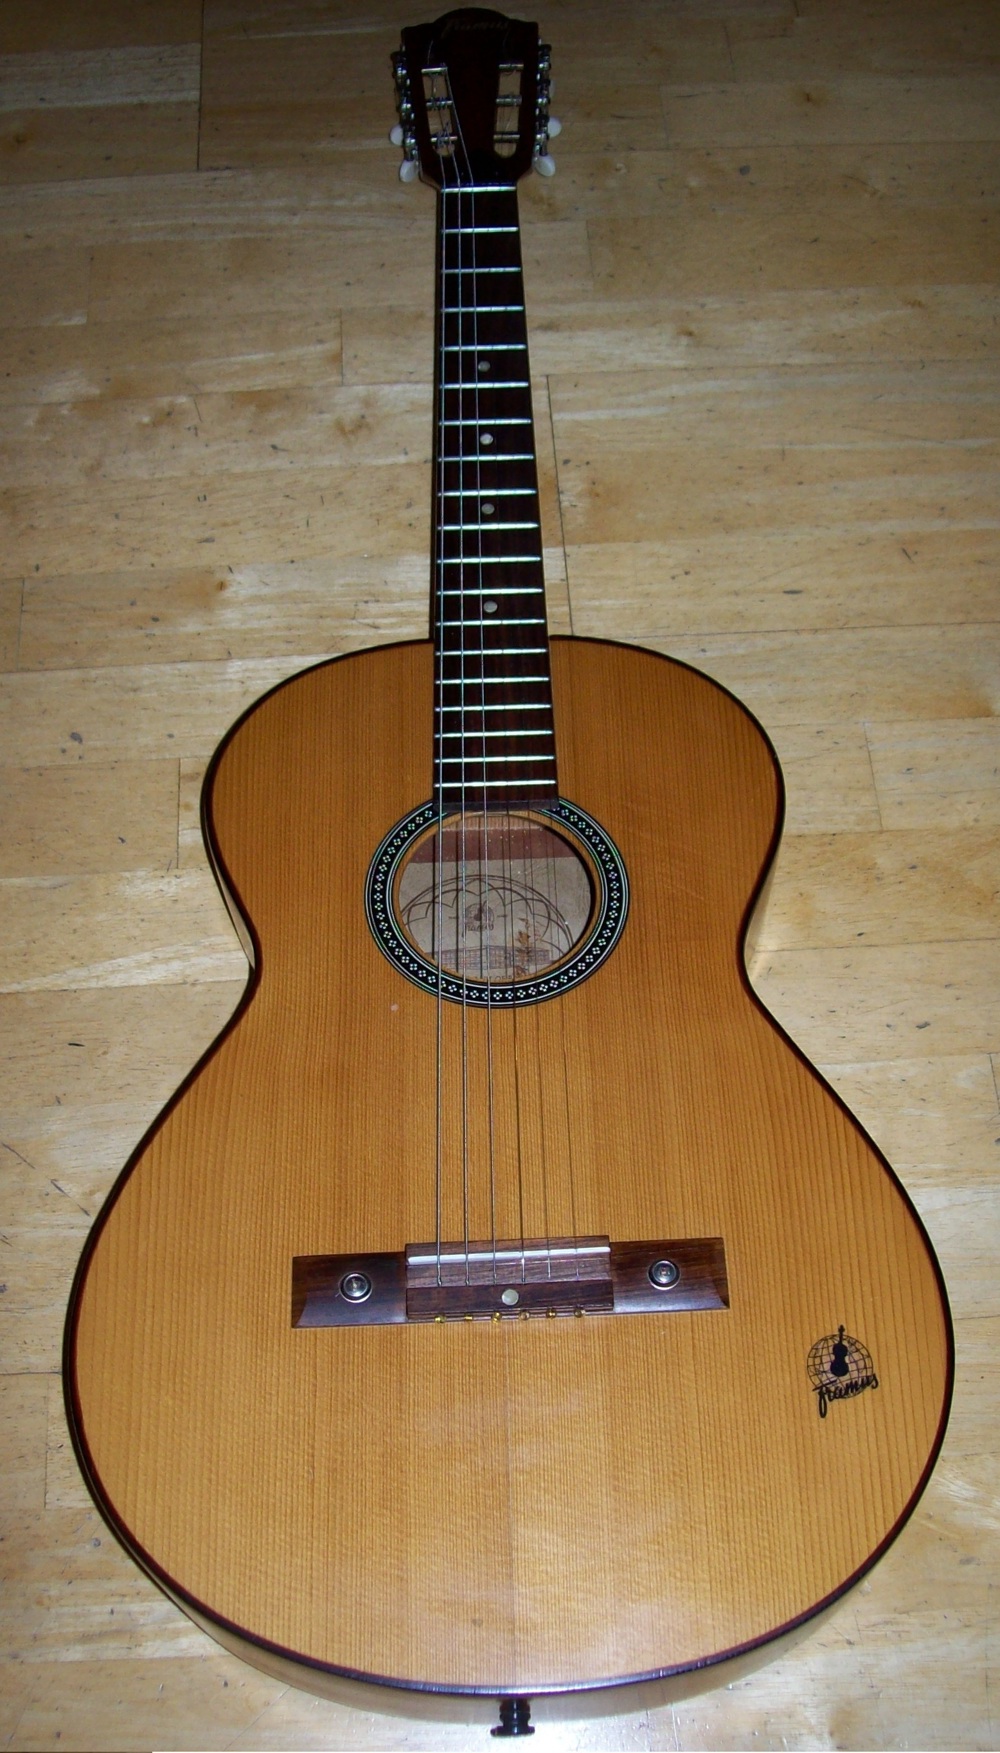 Gitarre FRAMUS, Modell 5 1, Amateur, 1972 alt old guitar vintage